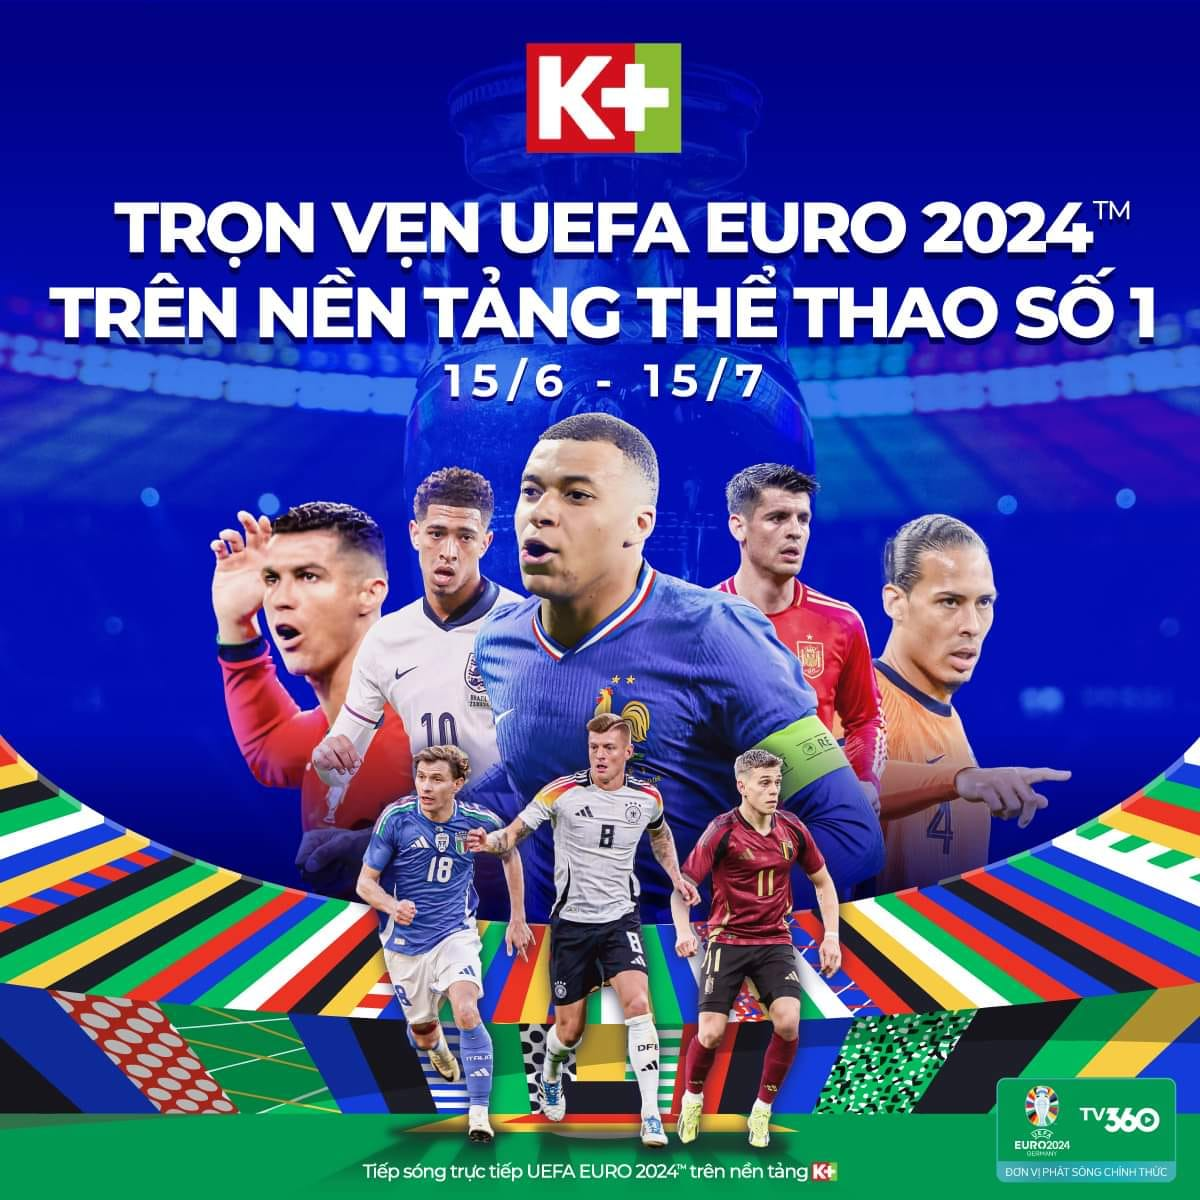 Tưng bừng đại hội bóng đá EURO 2024  và COPA AMERICA 2024 trên K+- Ảnh 1.